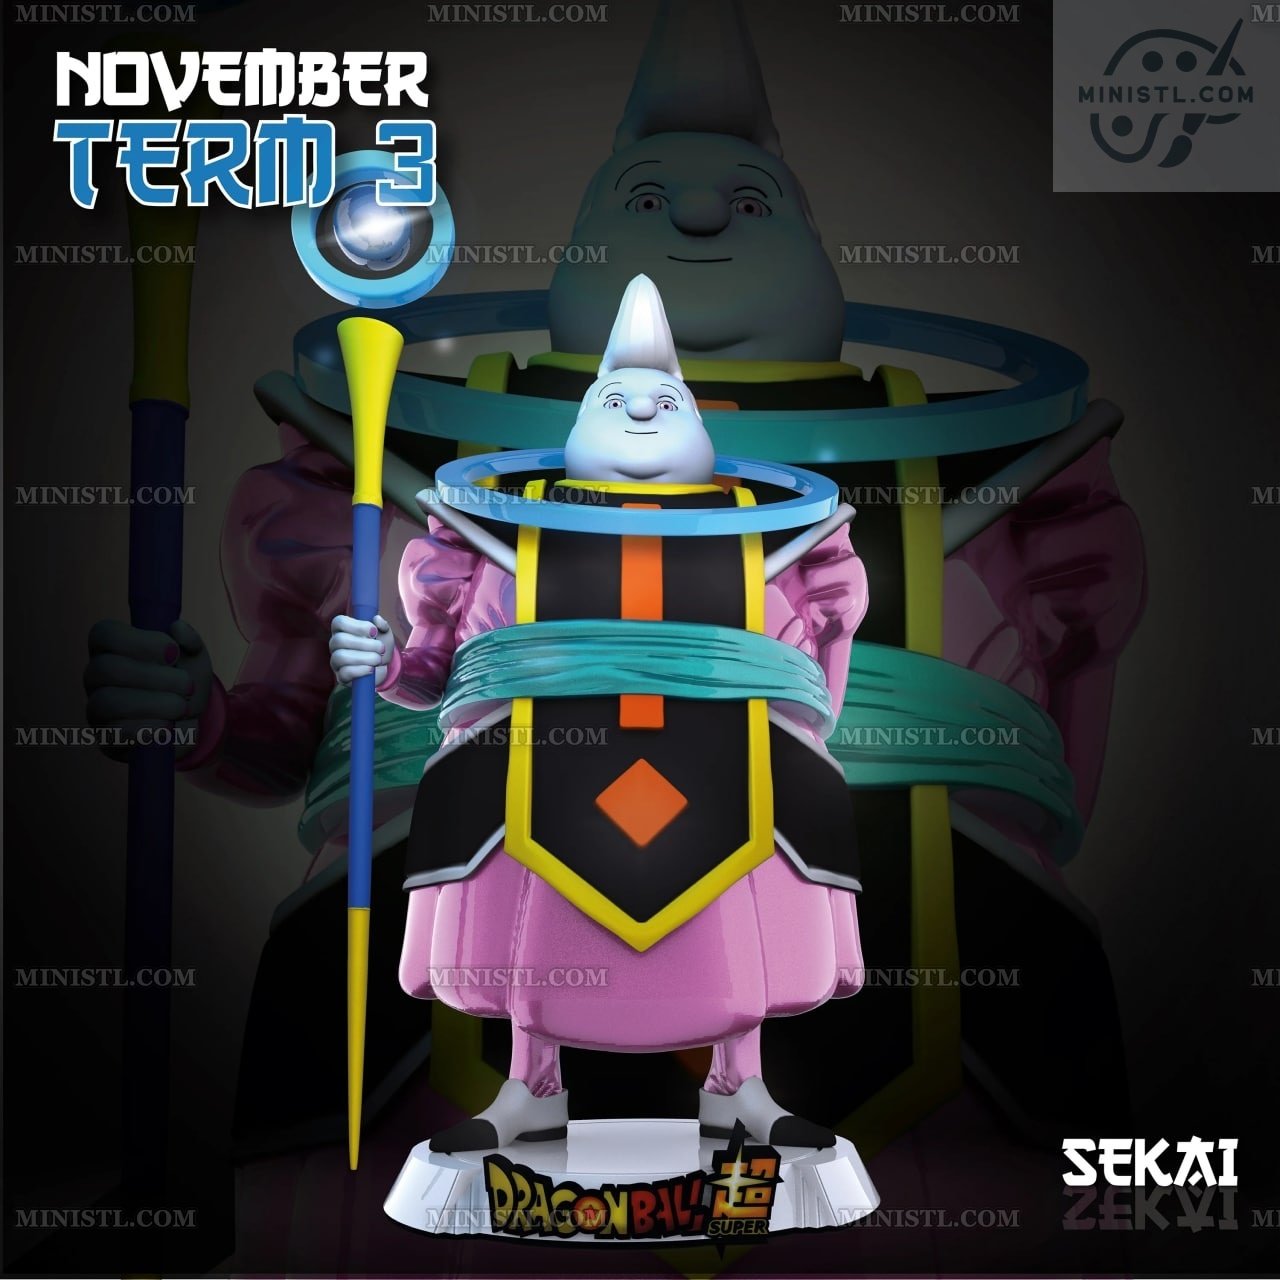 Sekai 3D Models November 2021 Sekai3D  MINISTL 3